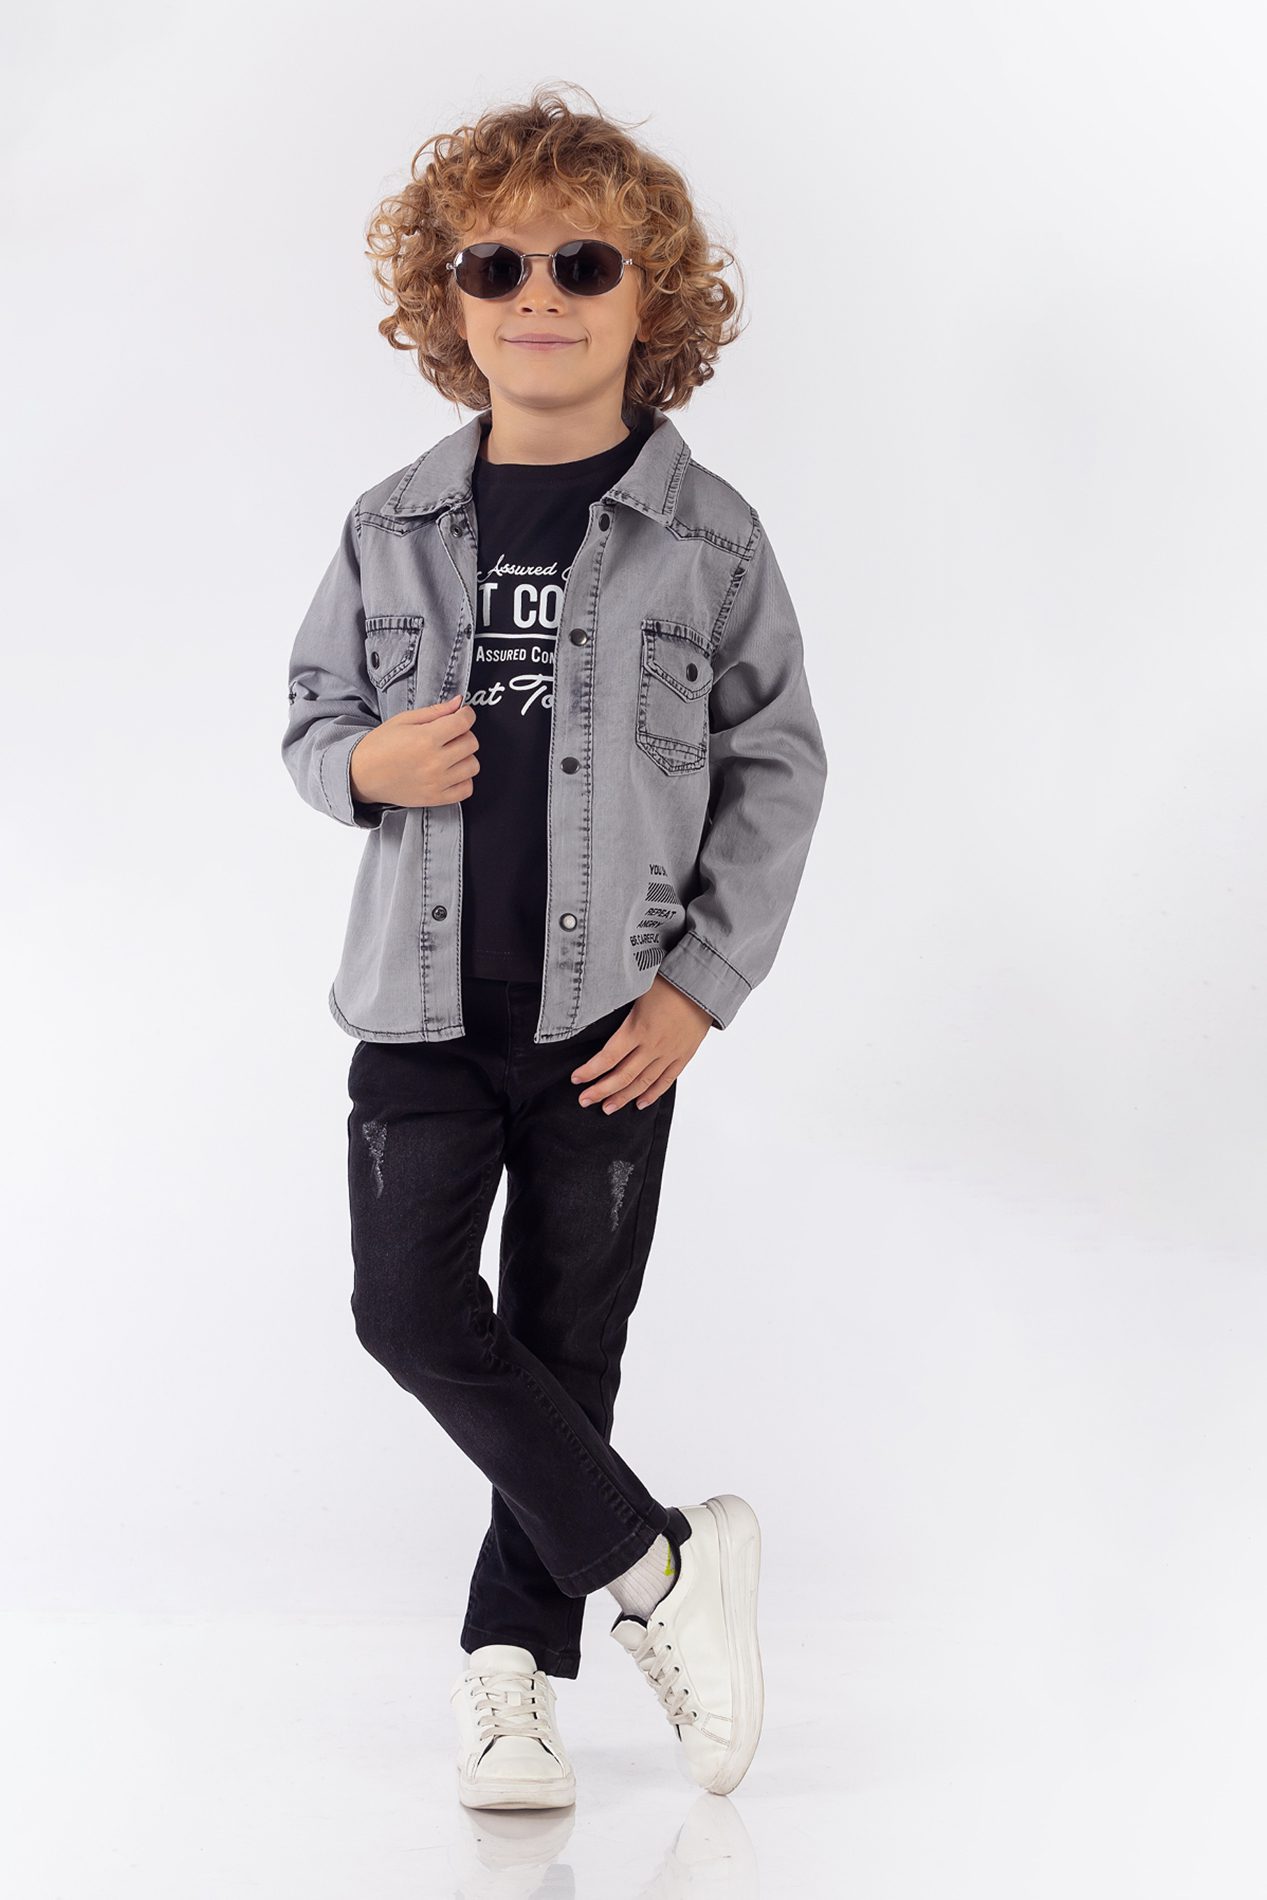 Boy 3 Pieces Denim Suit Set (Shirt + T-Shirt + Jean) / 2-5Y Or 6-9Y - Kids Fashion Turkey